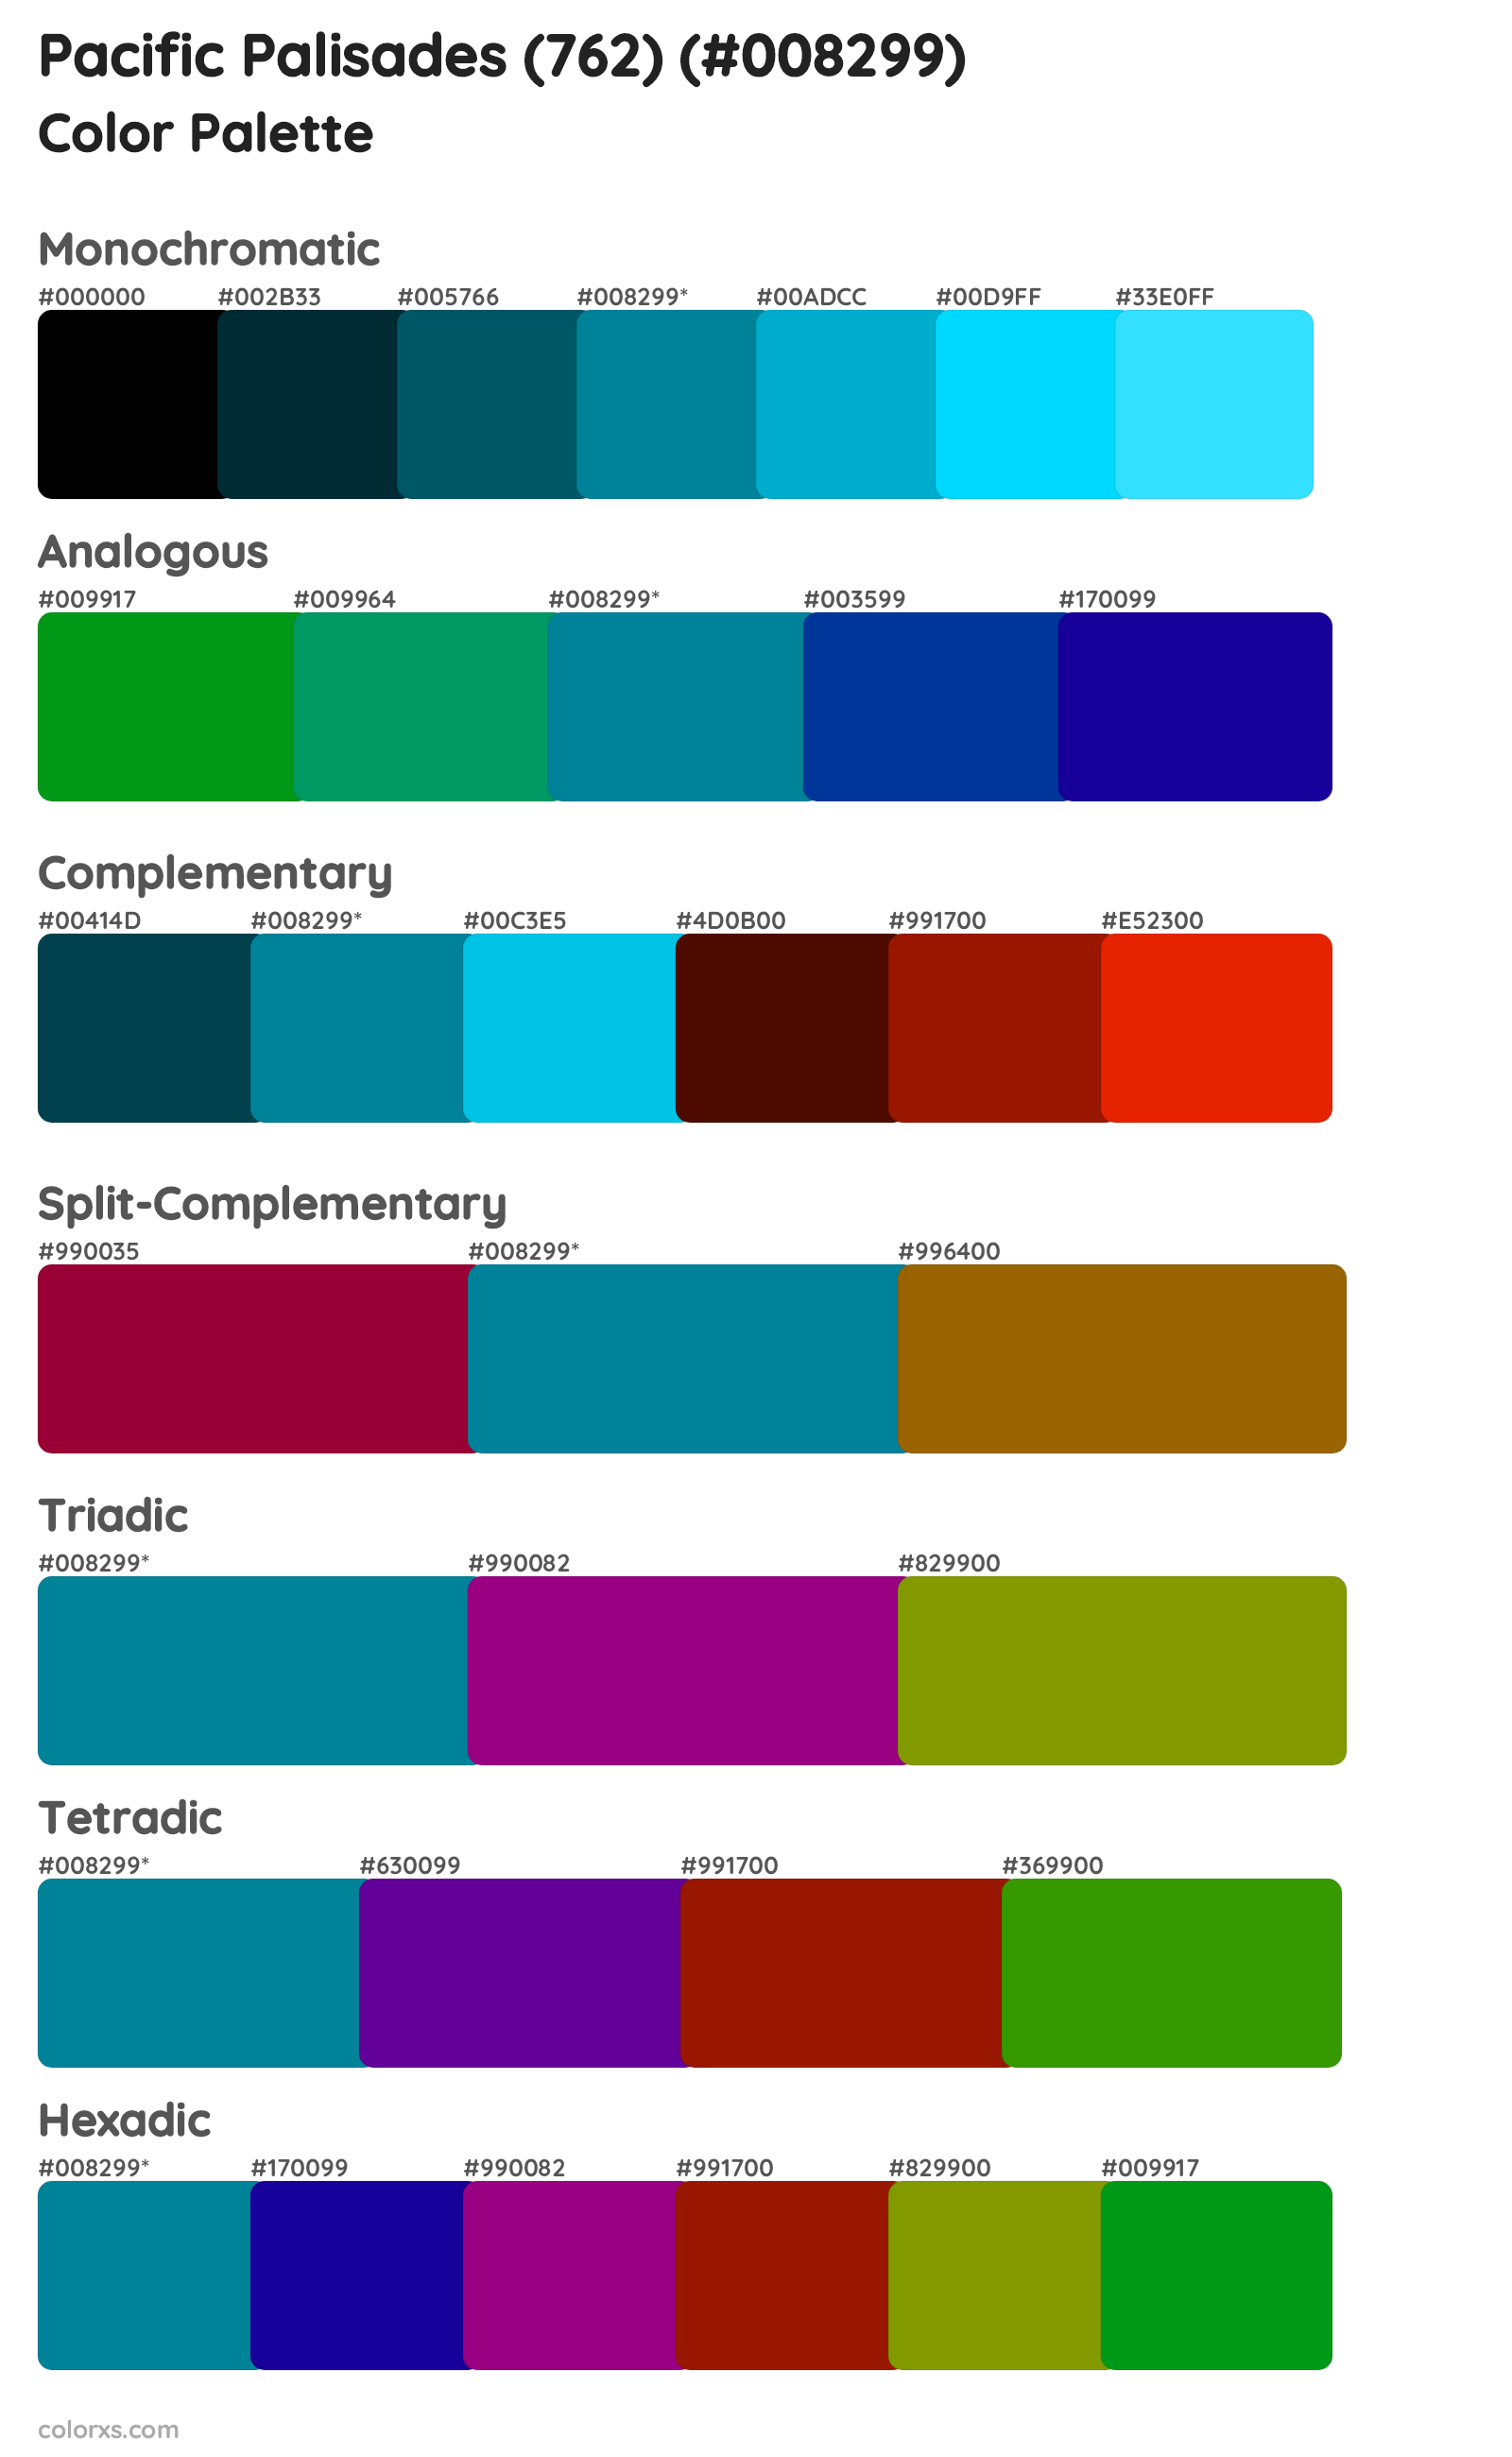 Pacific Palisades (762) Color Scheme Palettes